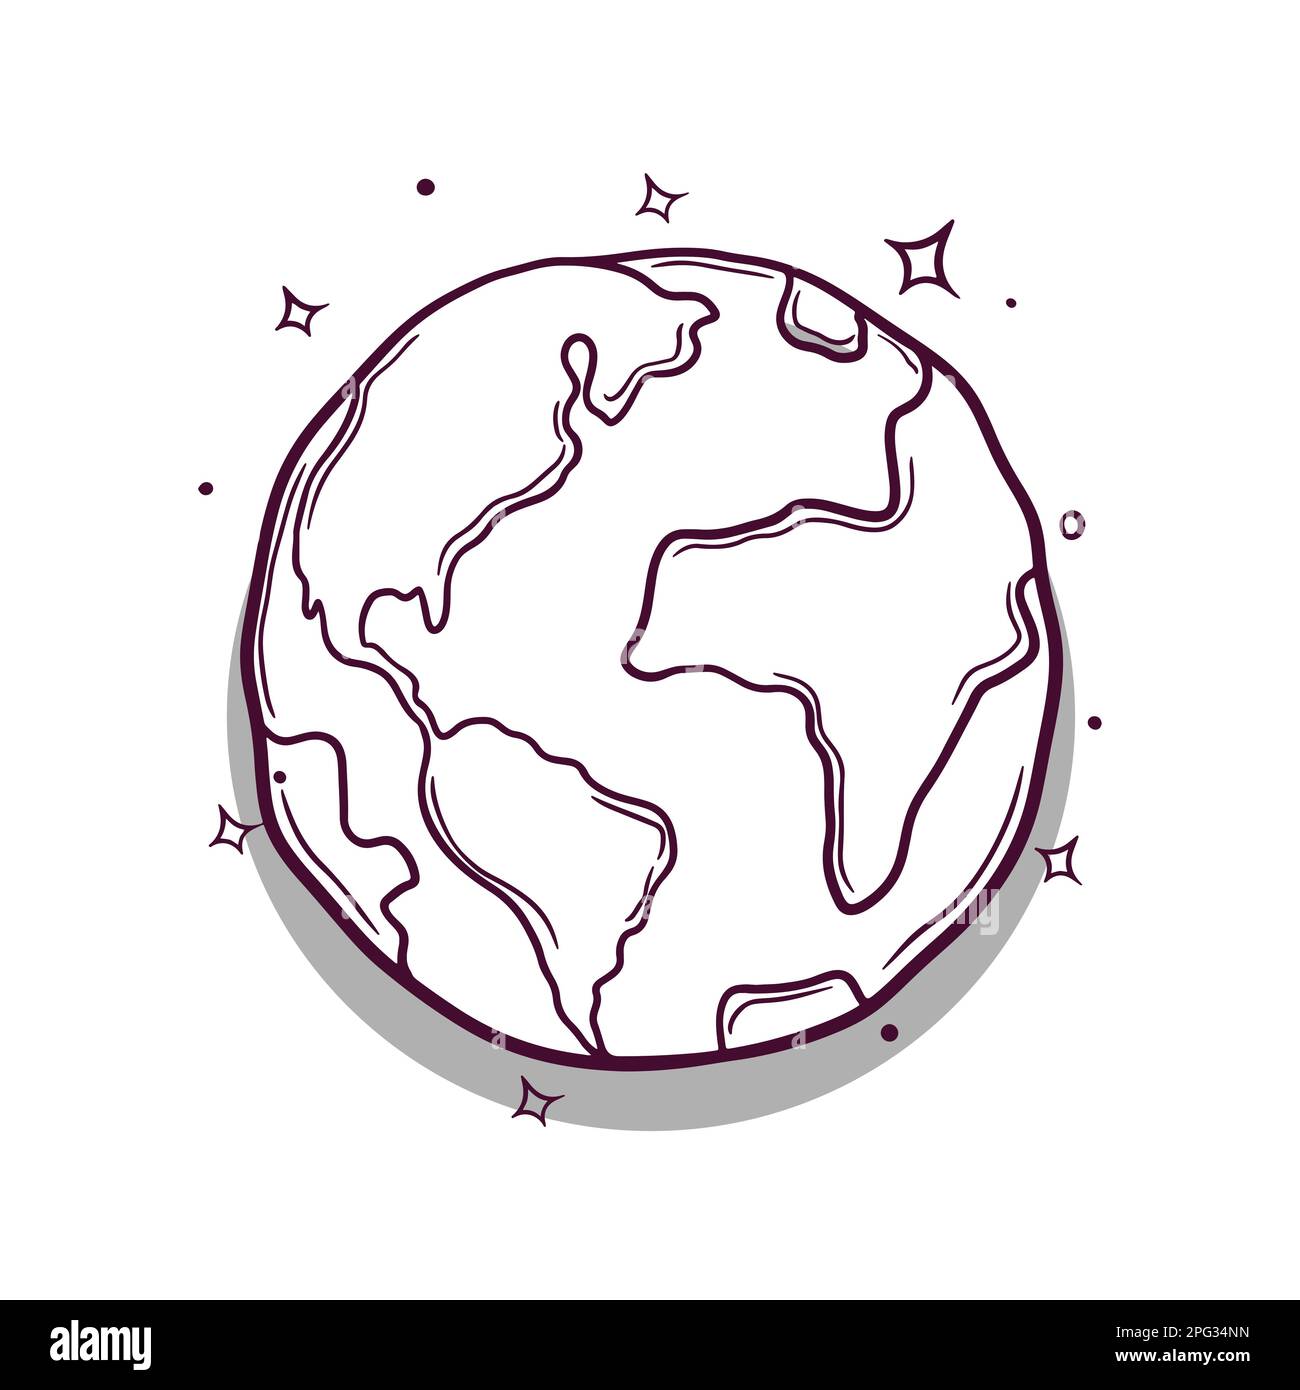 dibujado a mano planeta tierra ilustración vectorial Ilustración del Vector